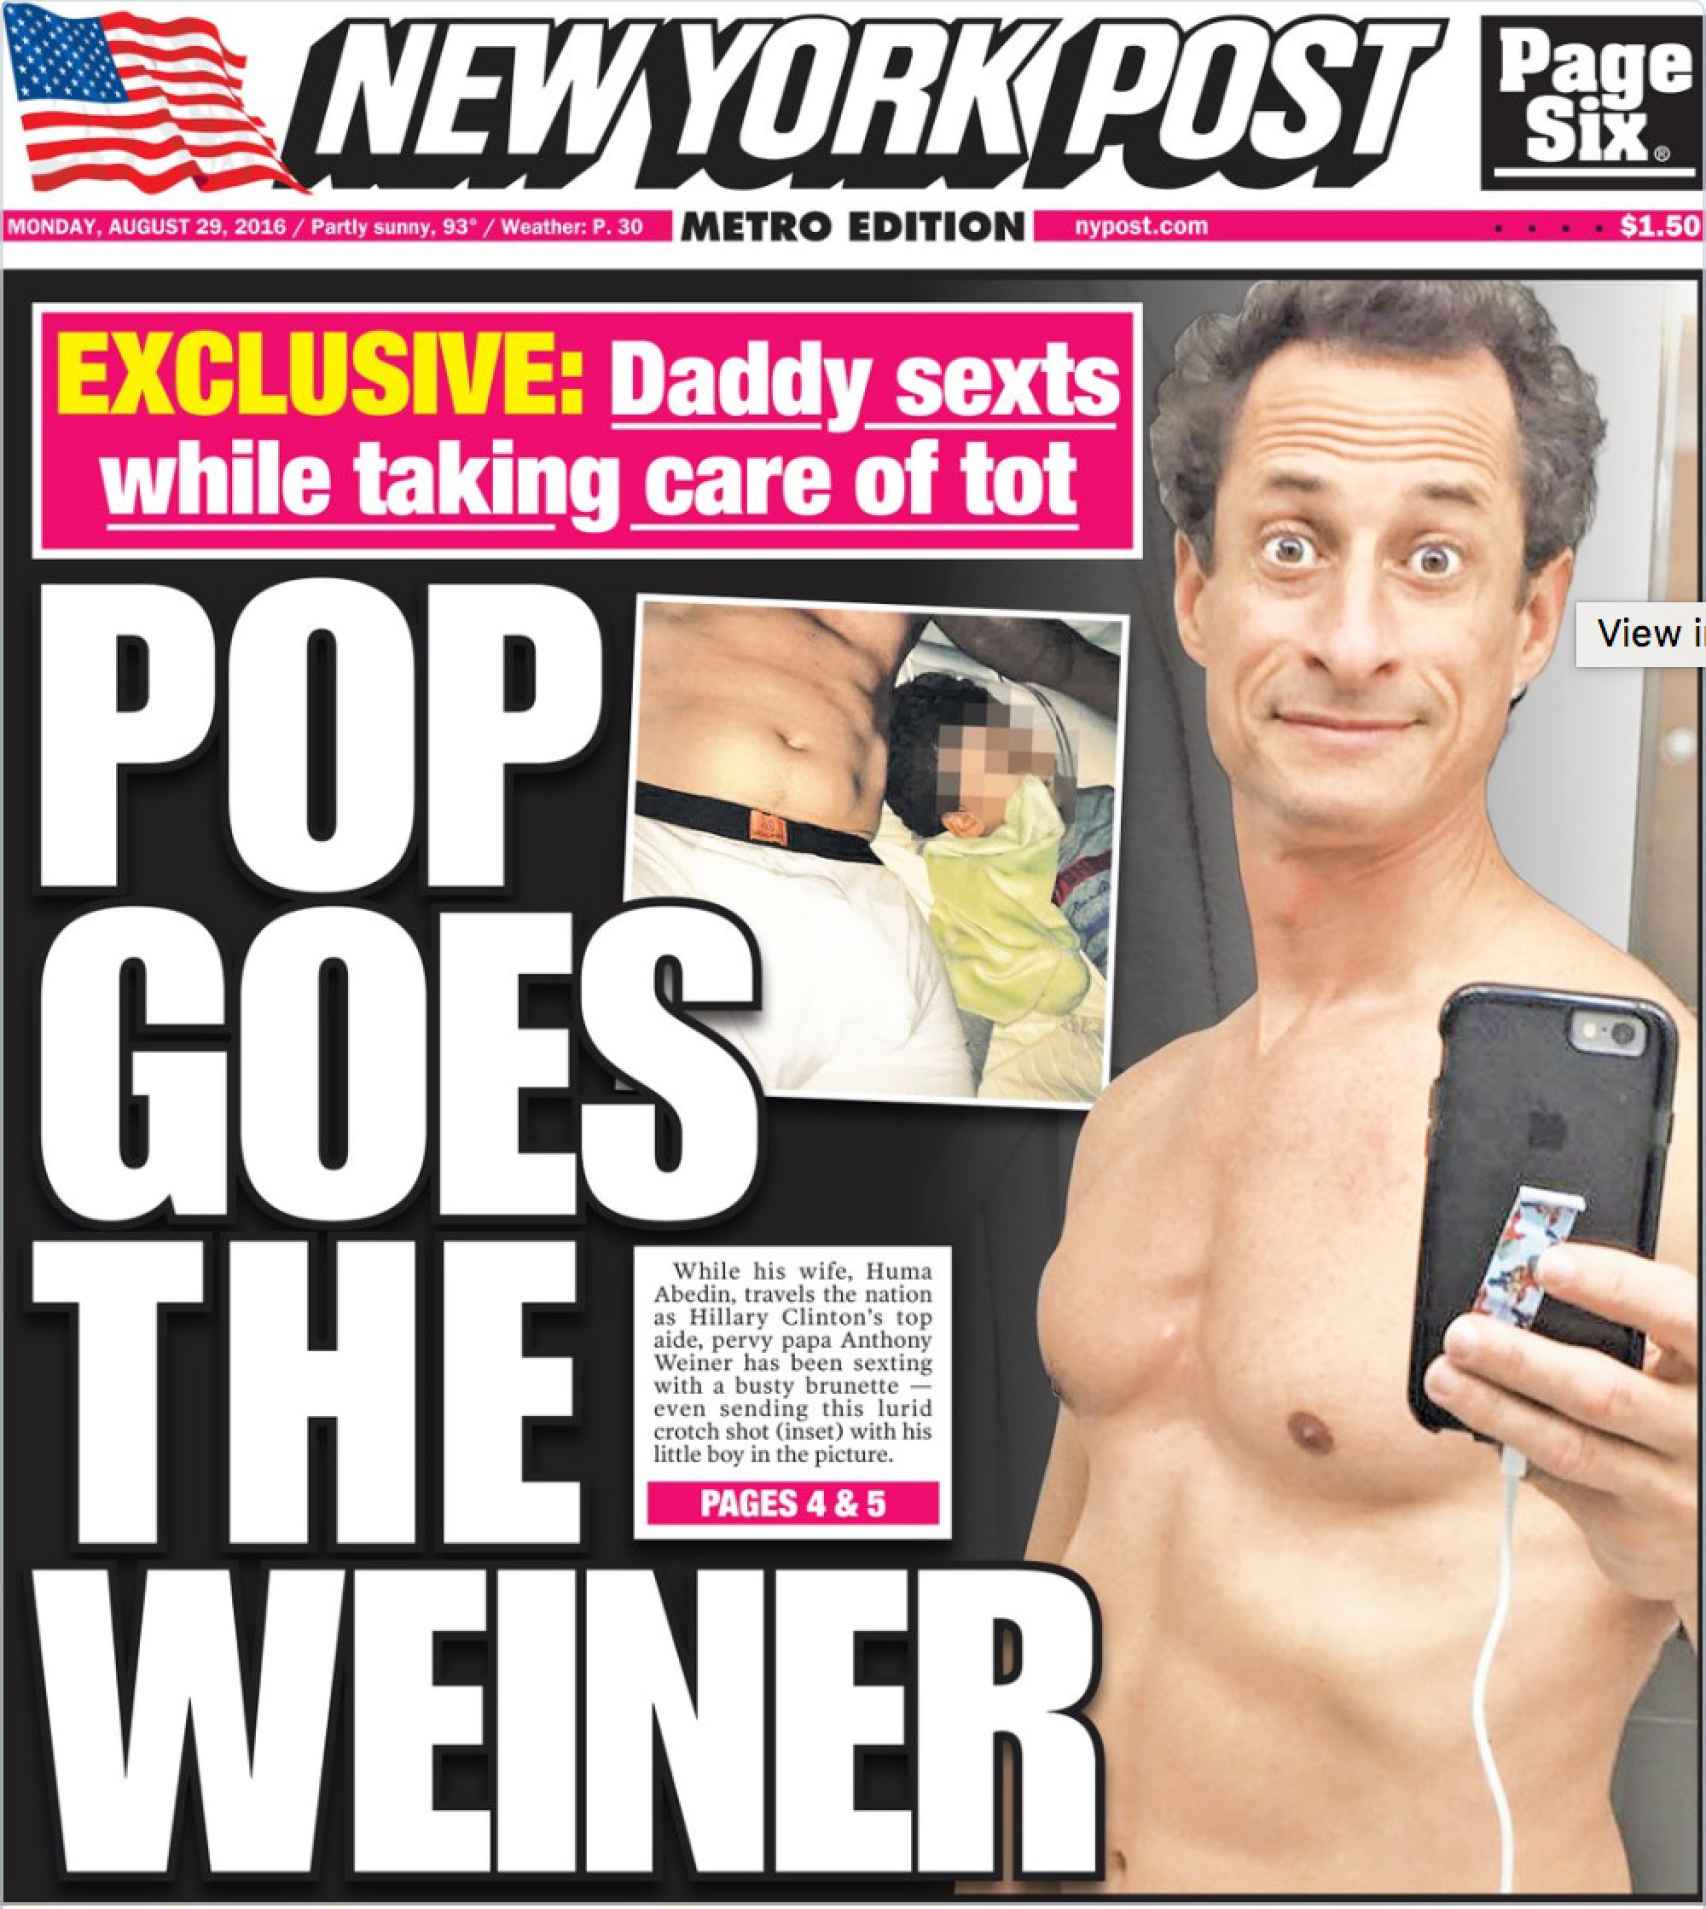 Portada del New York Post con imágenes que presuntamente Weiner envió a una mujer con la que intercambiaba mensajes.